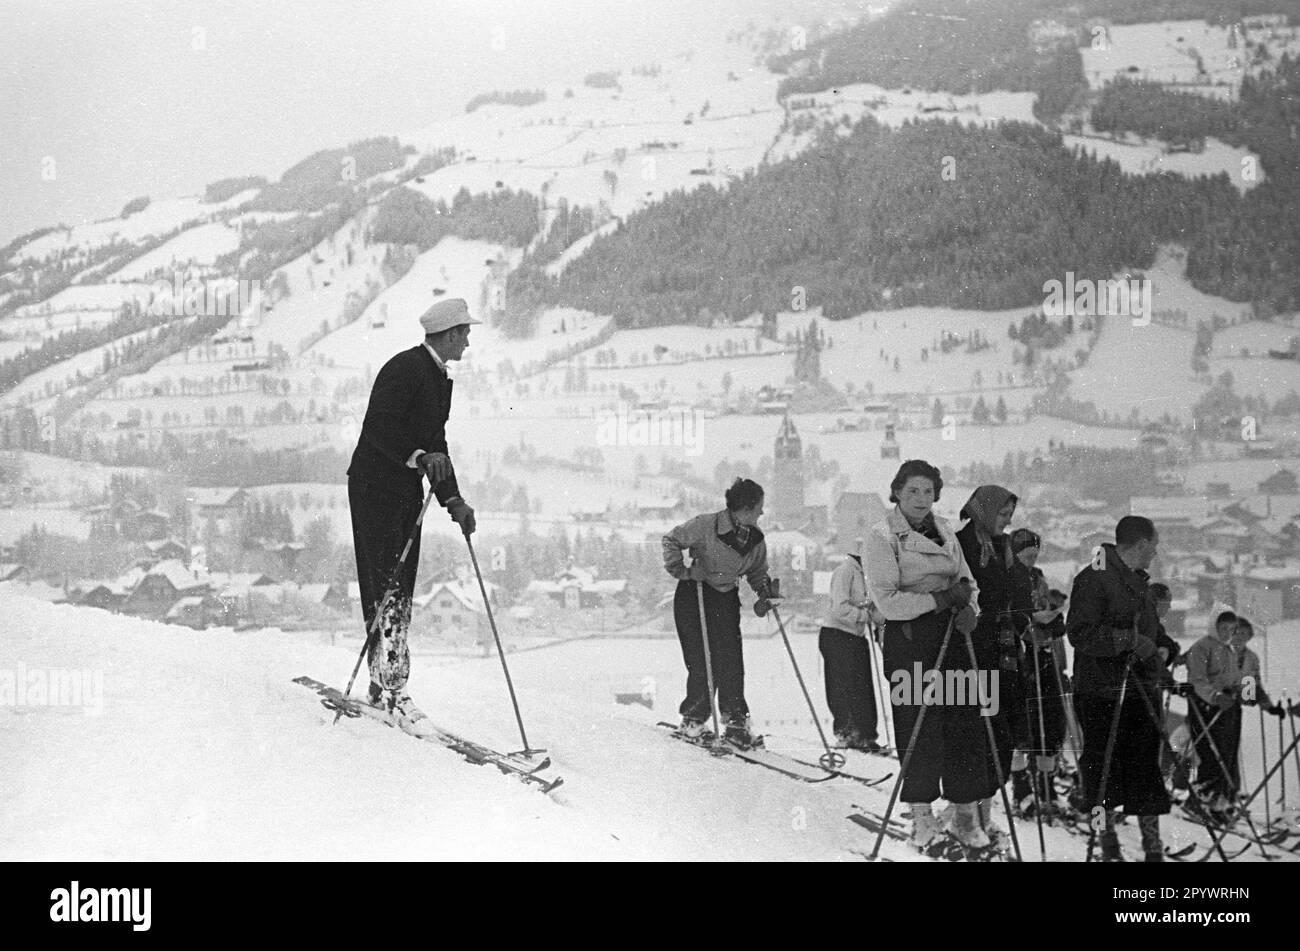 Un gruppo di sciatori si trova su un pendio a St Johann im Pongau. Foto non datata, probabilmente dall'inverno del 1938/39. Foto Stock